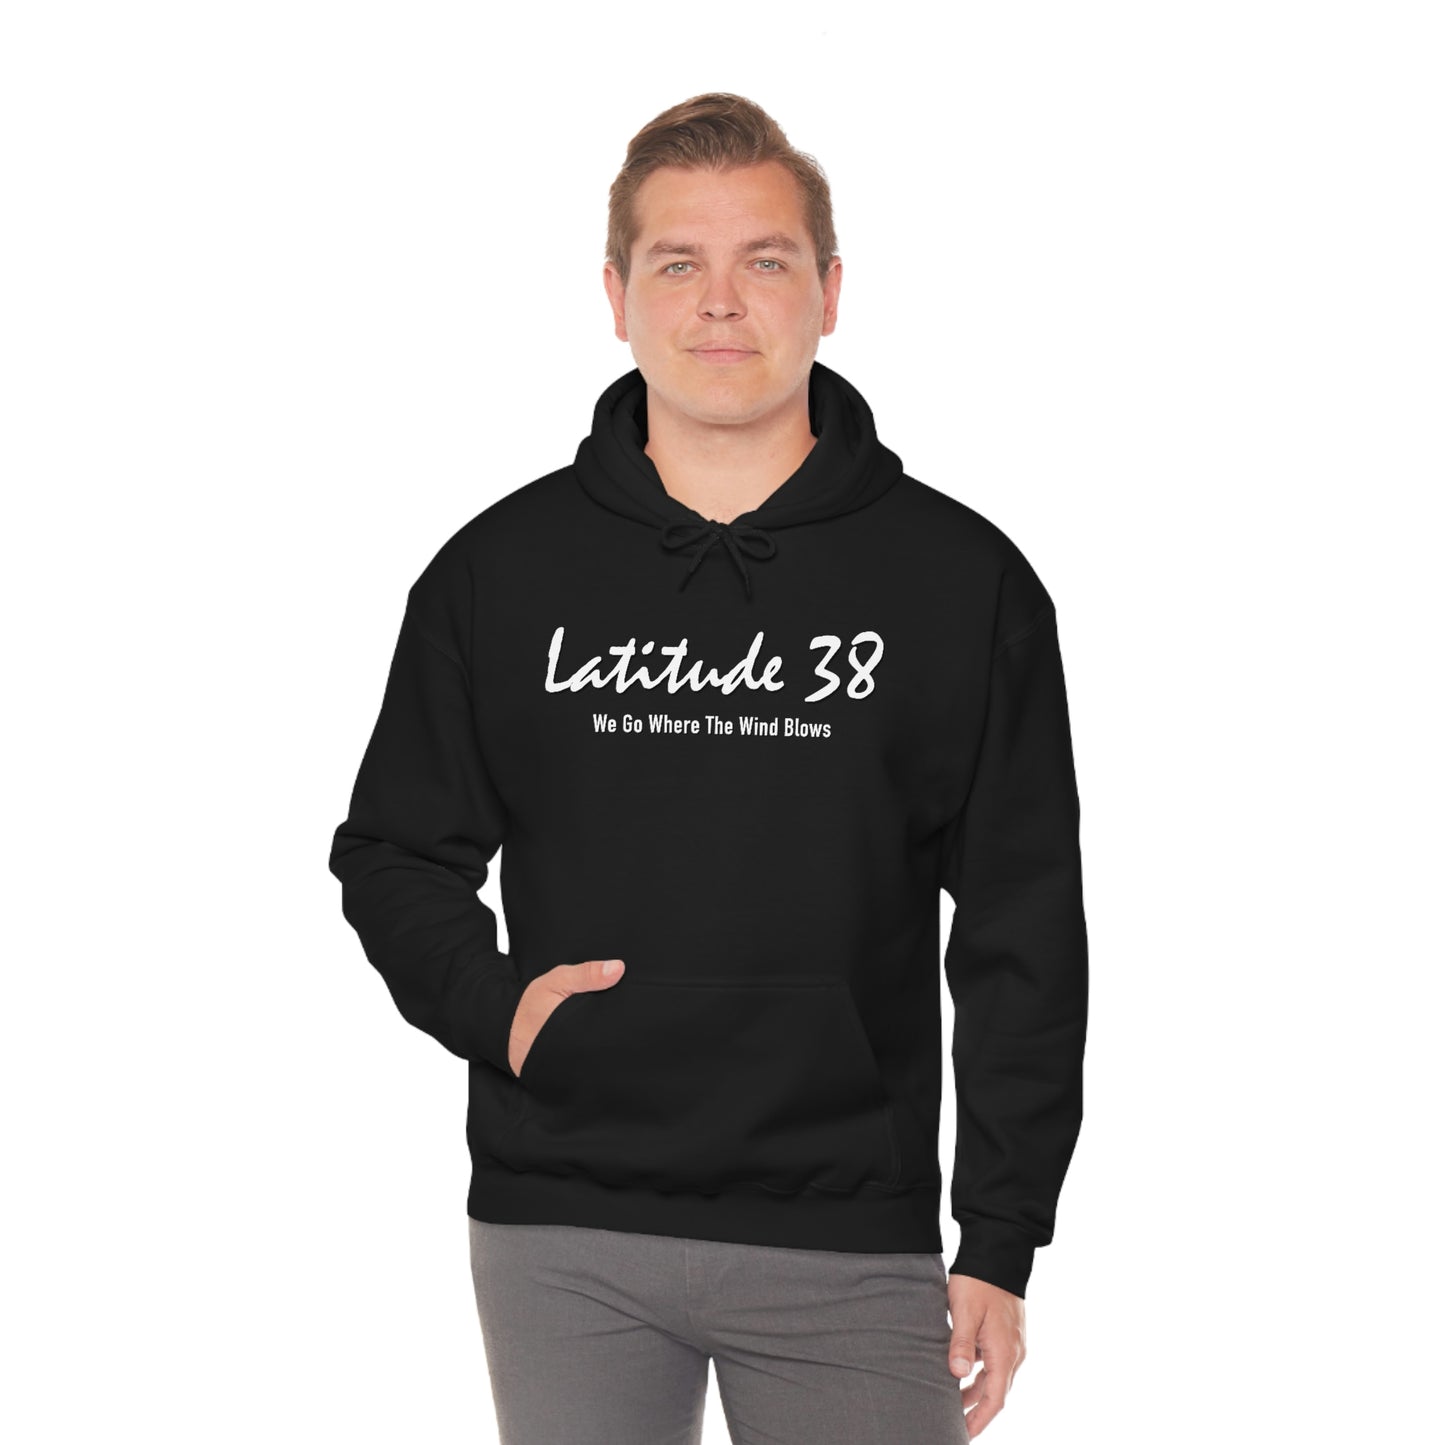 Latitude 38 Hooded Sweatshirt